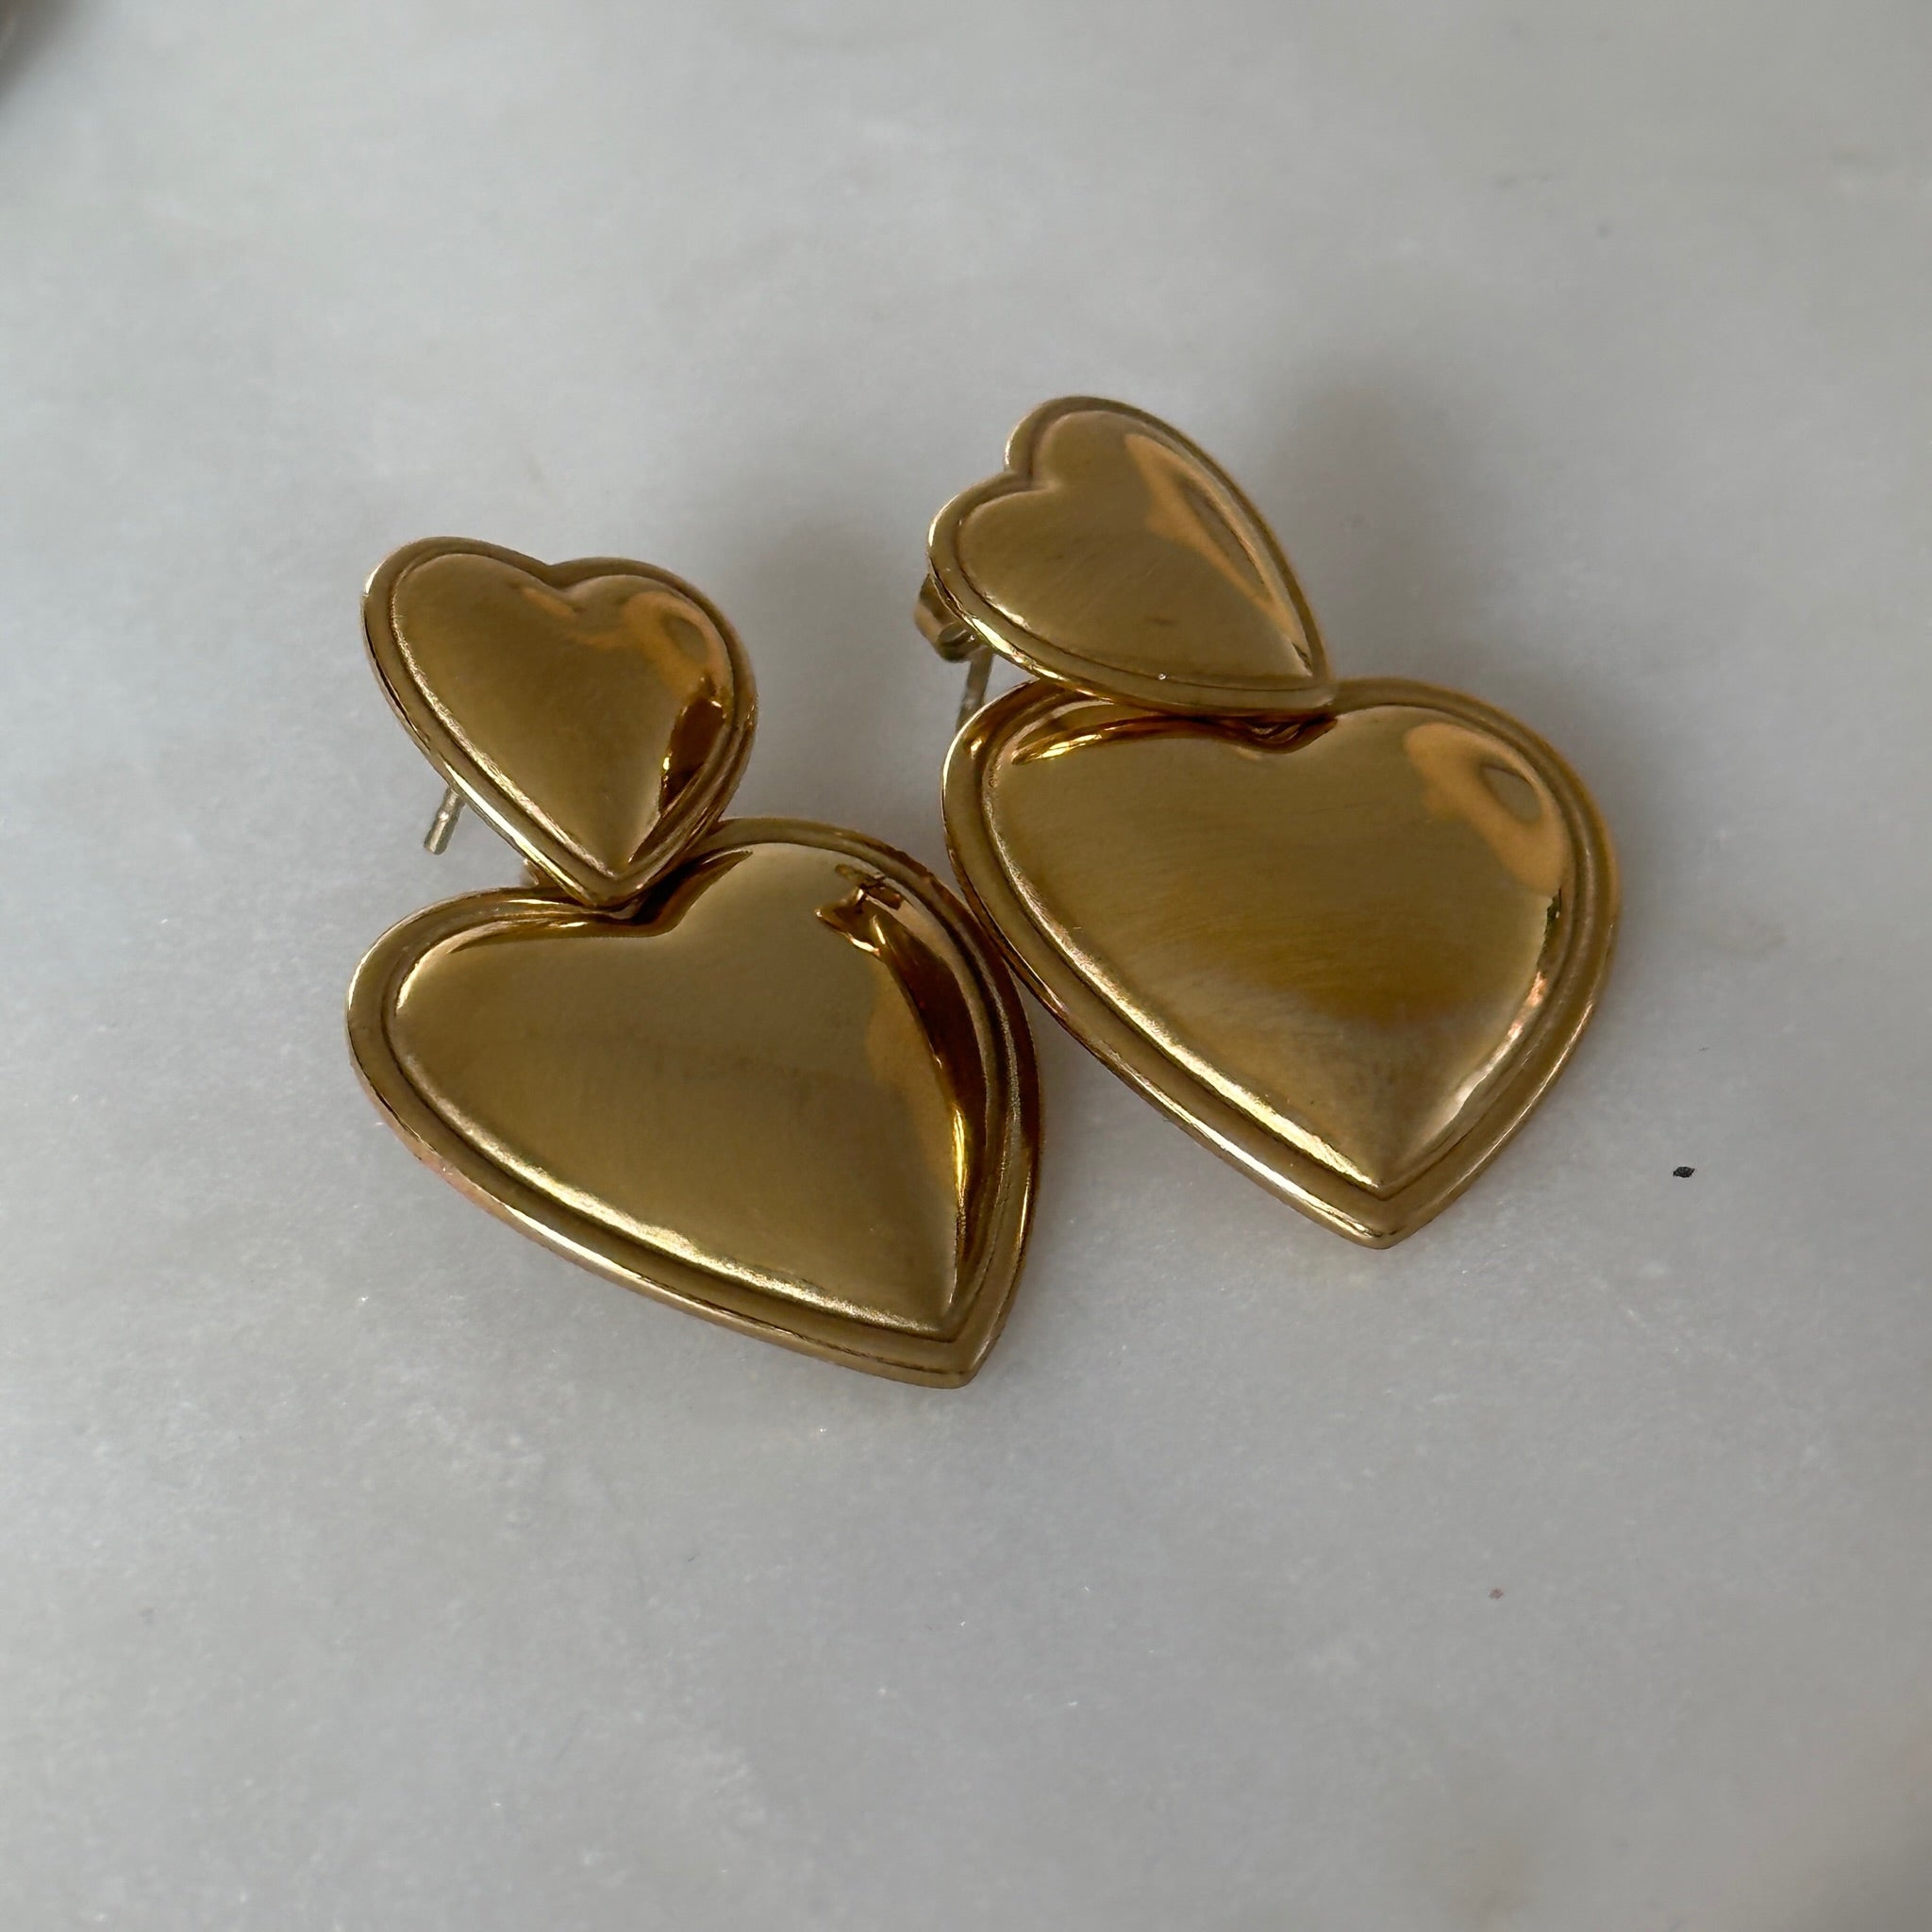 doubled up heart earrings